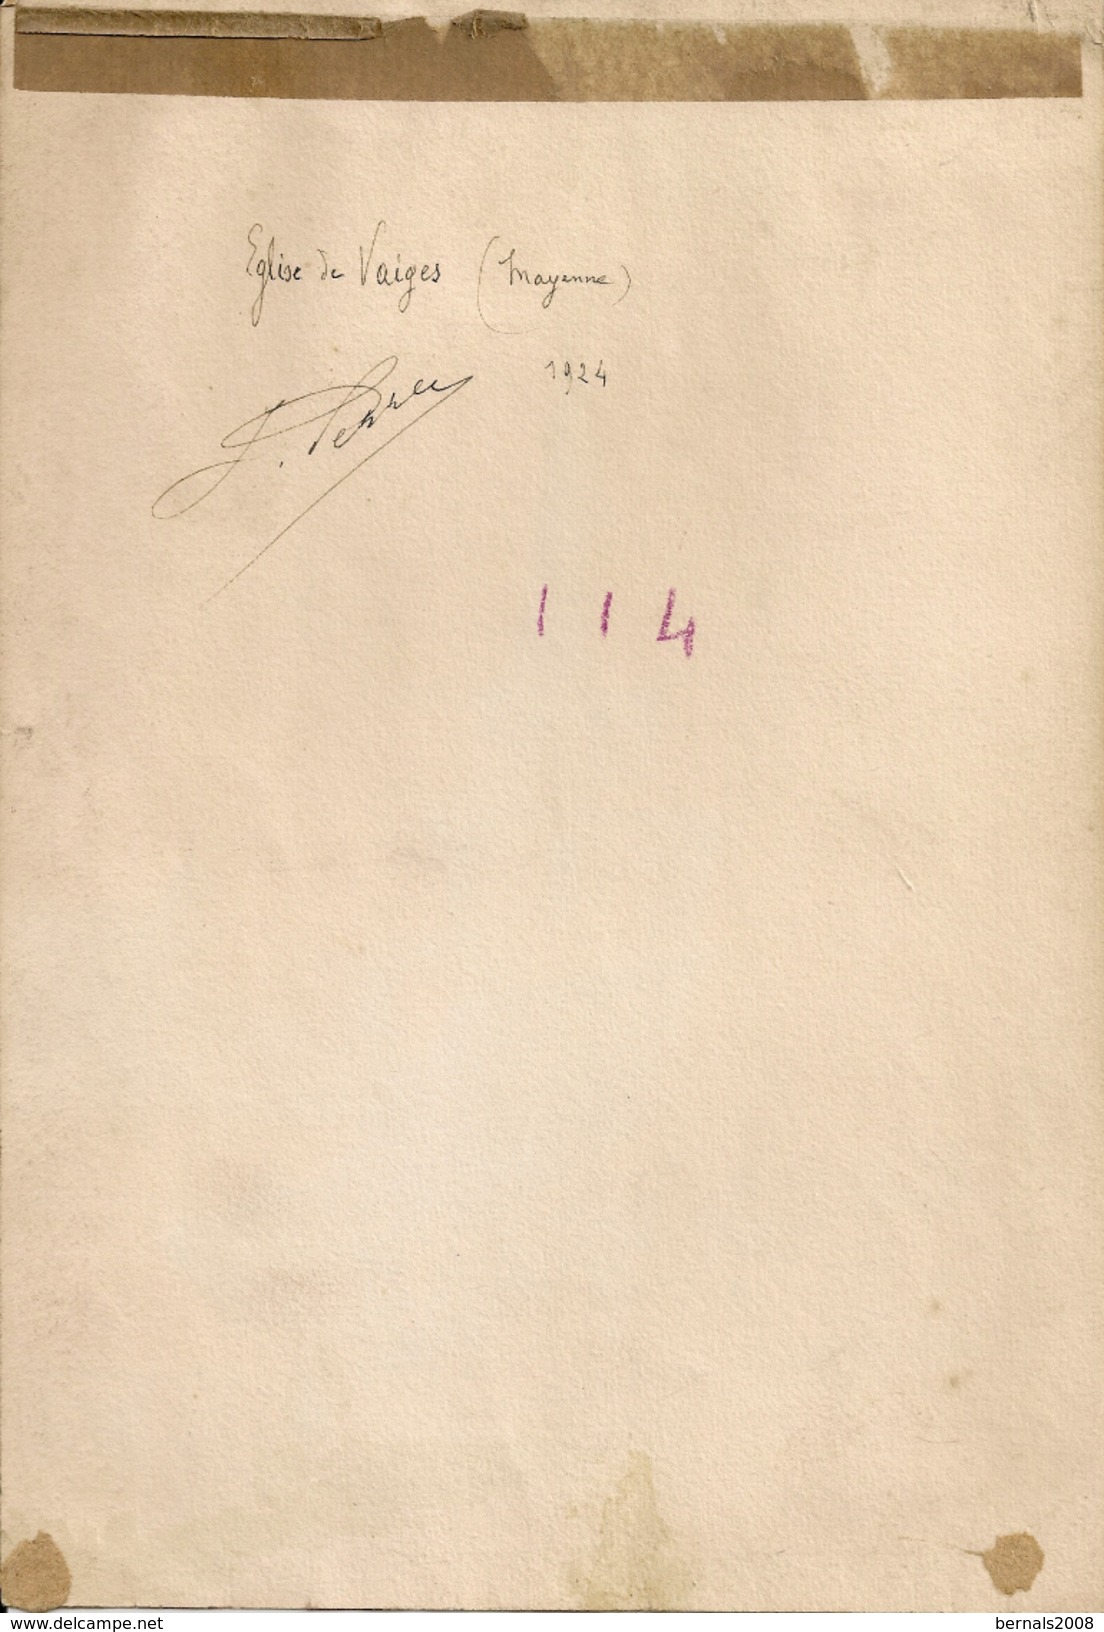 Autographe Artiste Peintre - Village De Mayenne 53 - église De VAIGES 1924- JULIEN PERREY - 26 X 17,5 Cm - Aquarelles